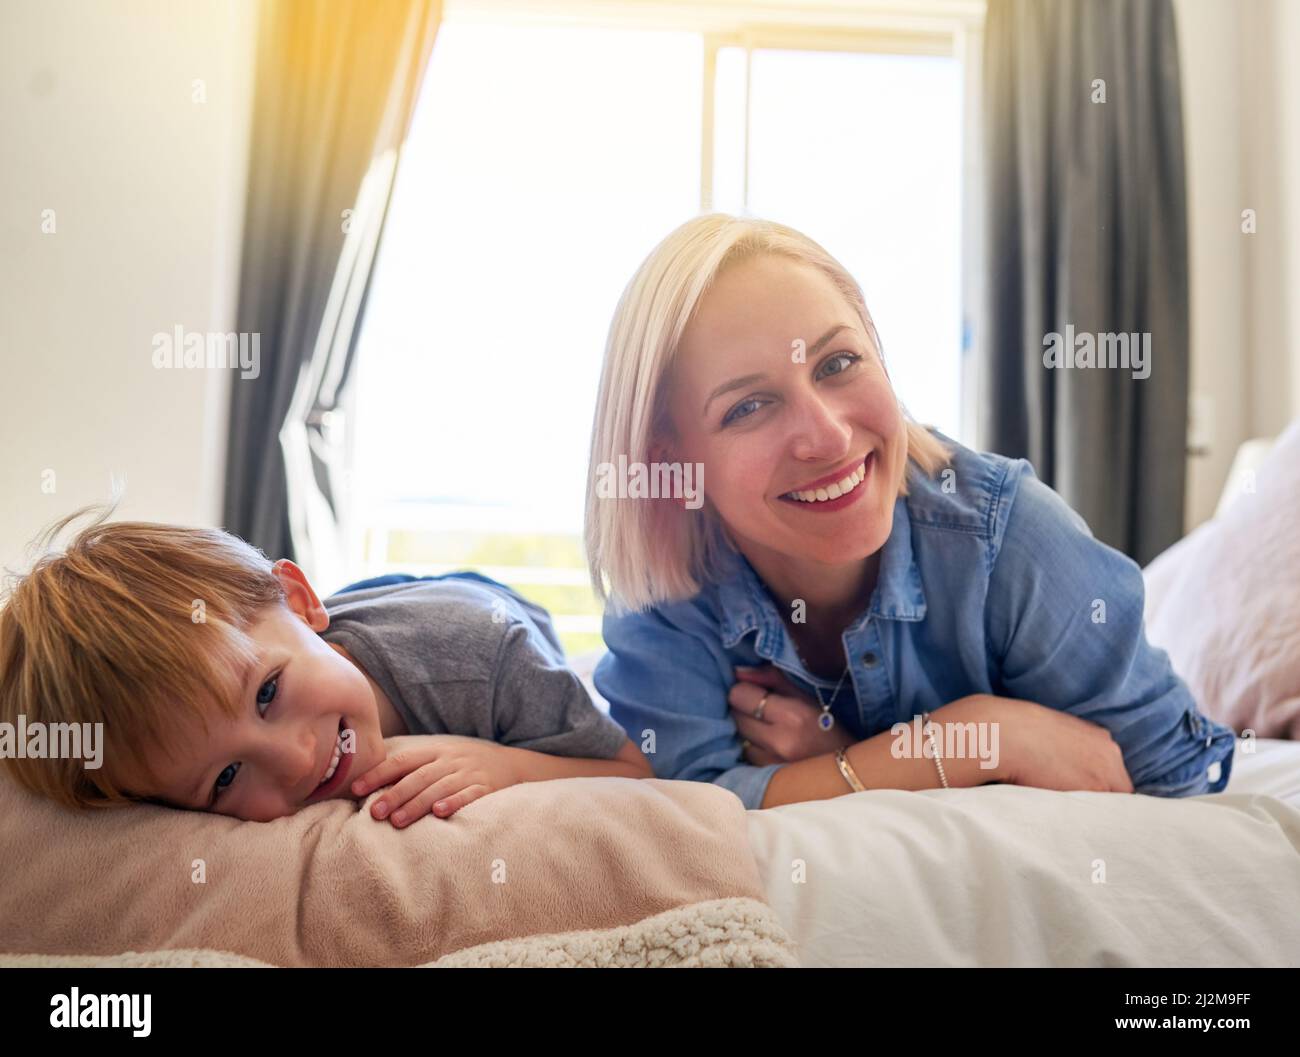 Sie sind am glücklichsten, wenn sie zusammen sind. Porträt einer Mutter und eines Sohnes, die zu Hause einige Zeit miteinander verbringen. Stockfoto